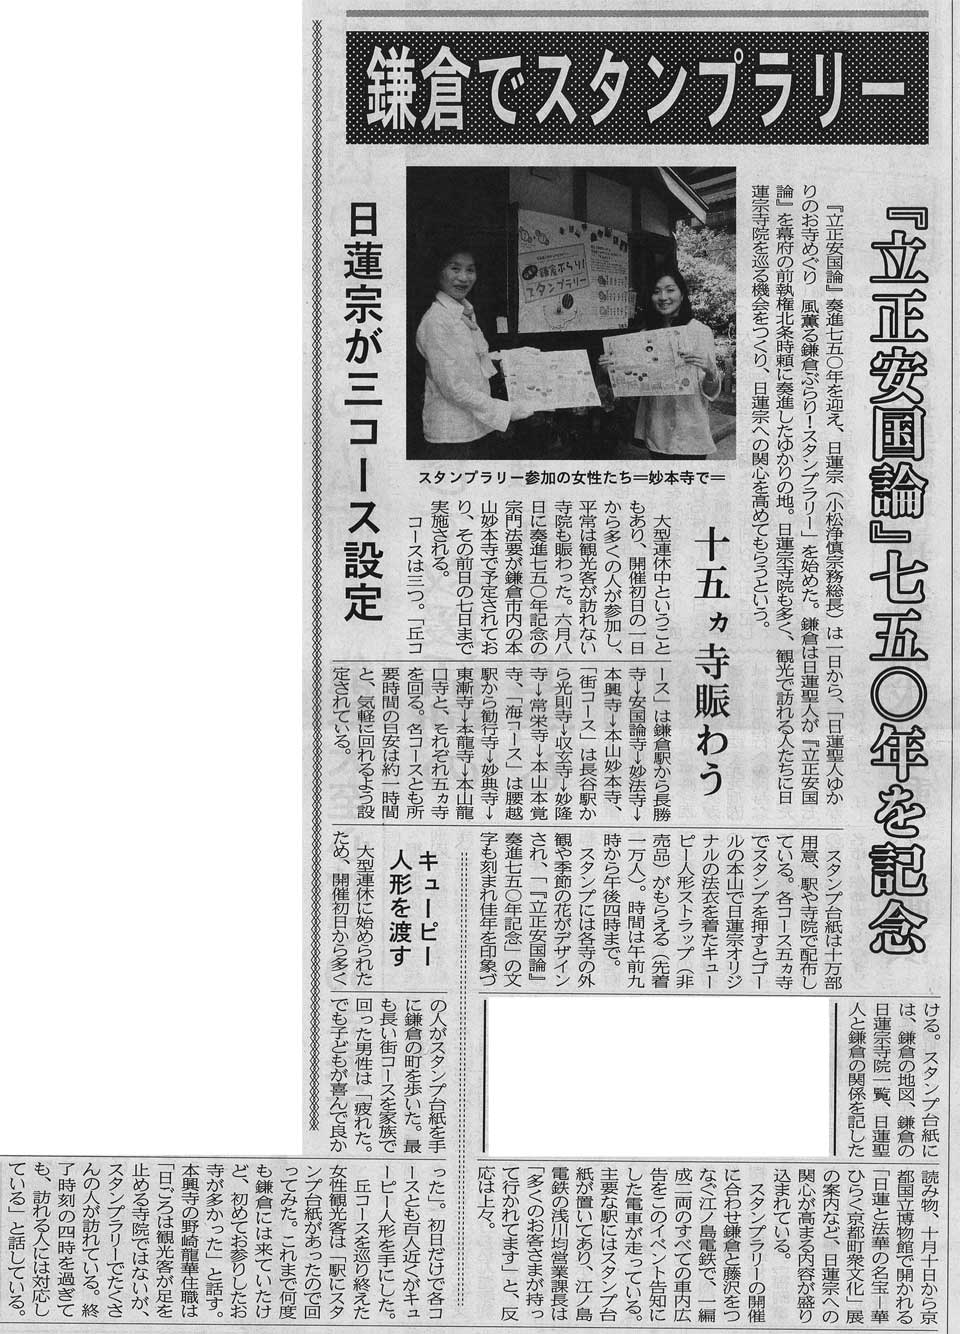 http://www.serenbutu.jp/news/20110512.jpg